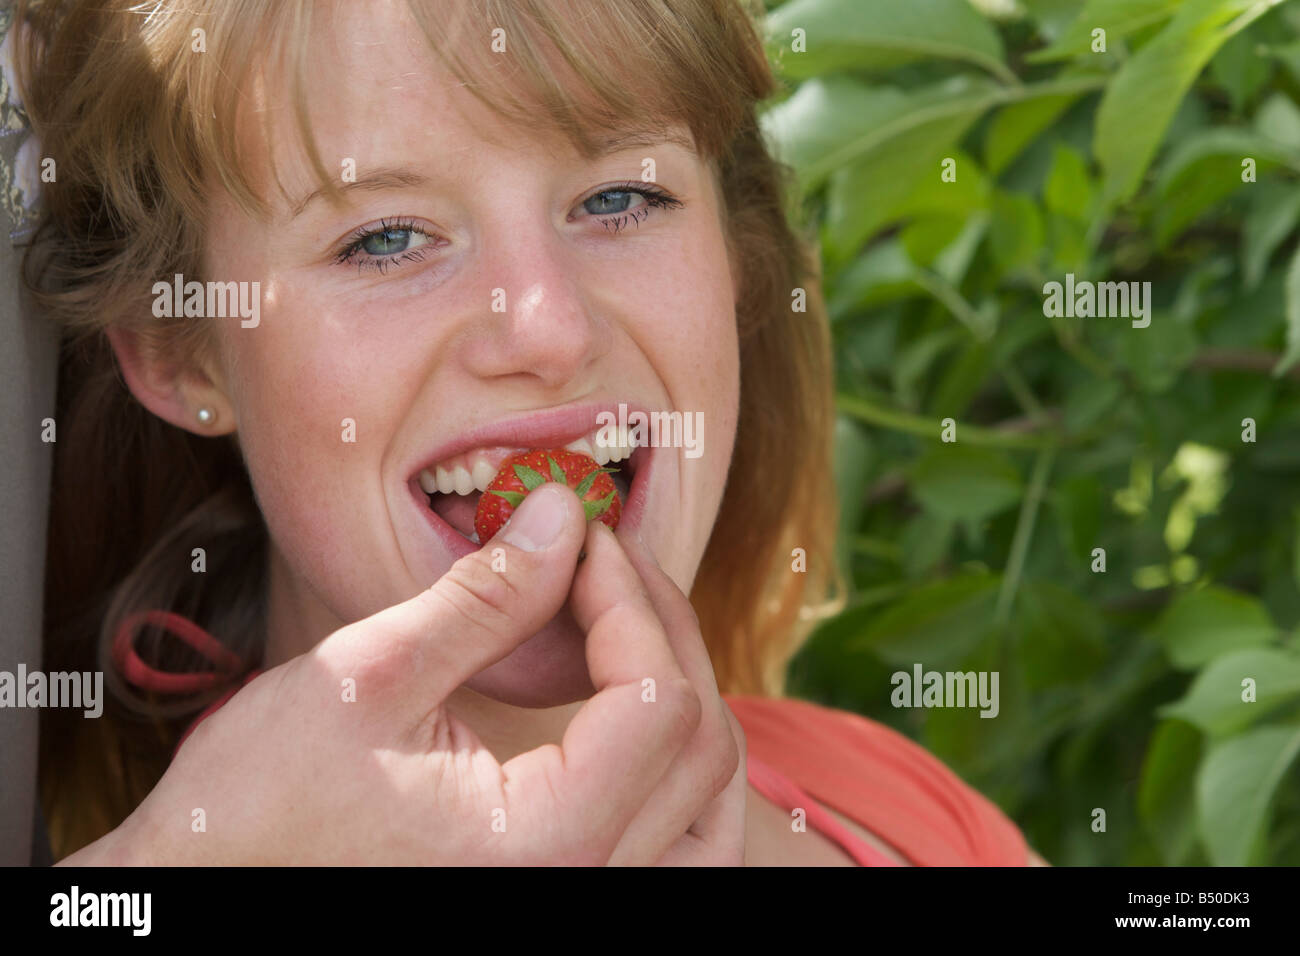 Young girl get fed with a strawberry - Mädchen wird mit einer Erdbeere gefüttert Stock Photo